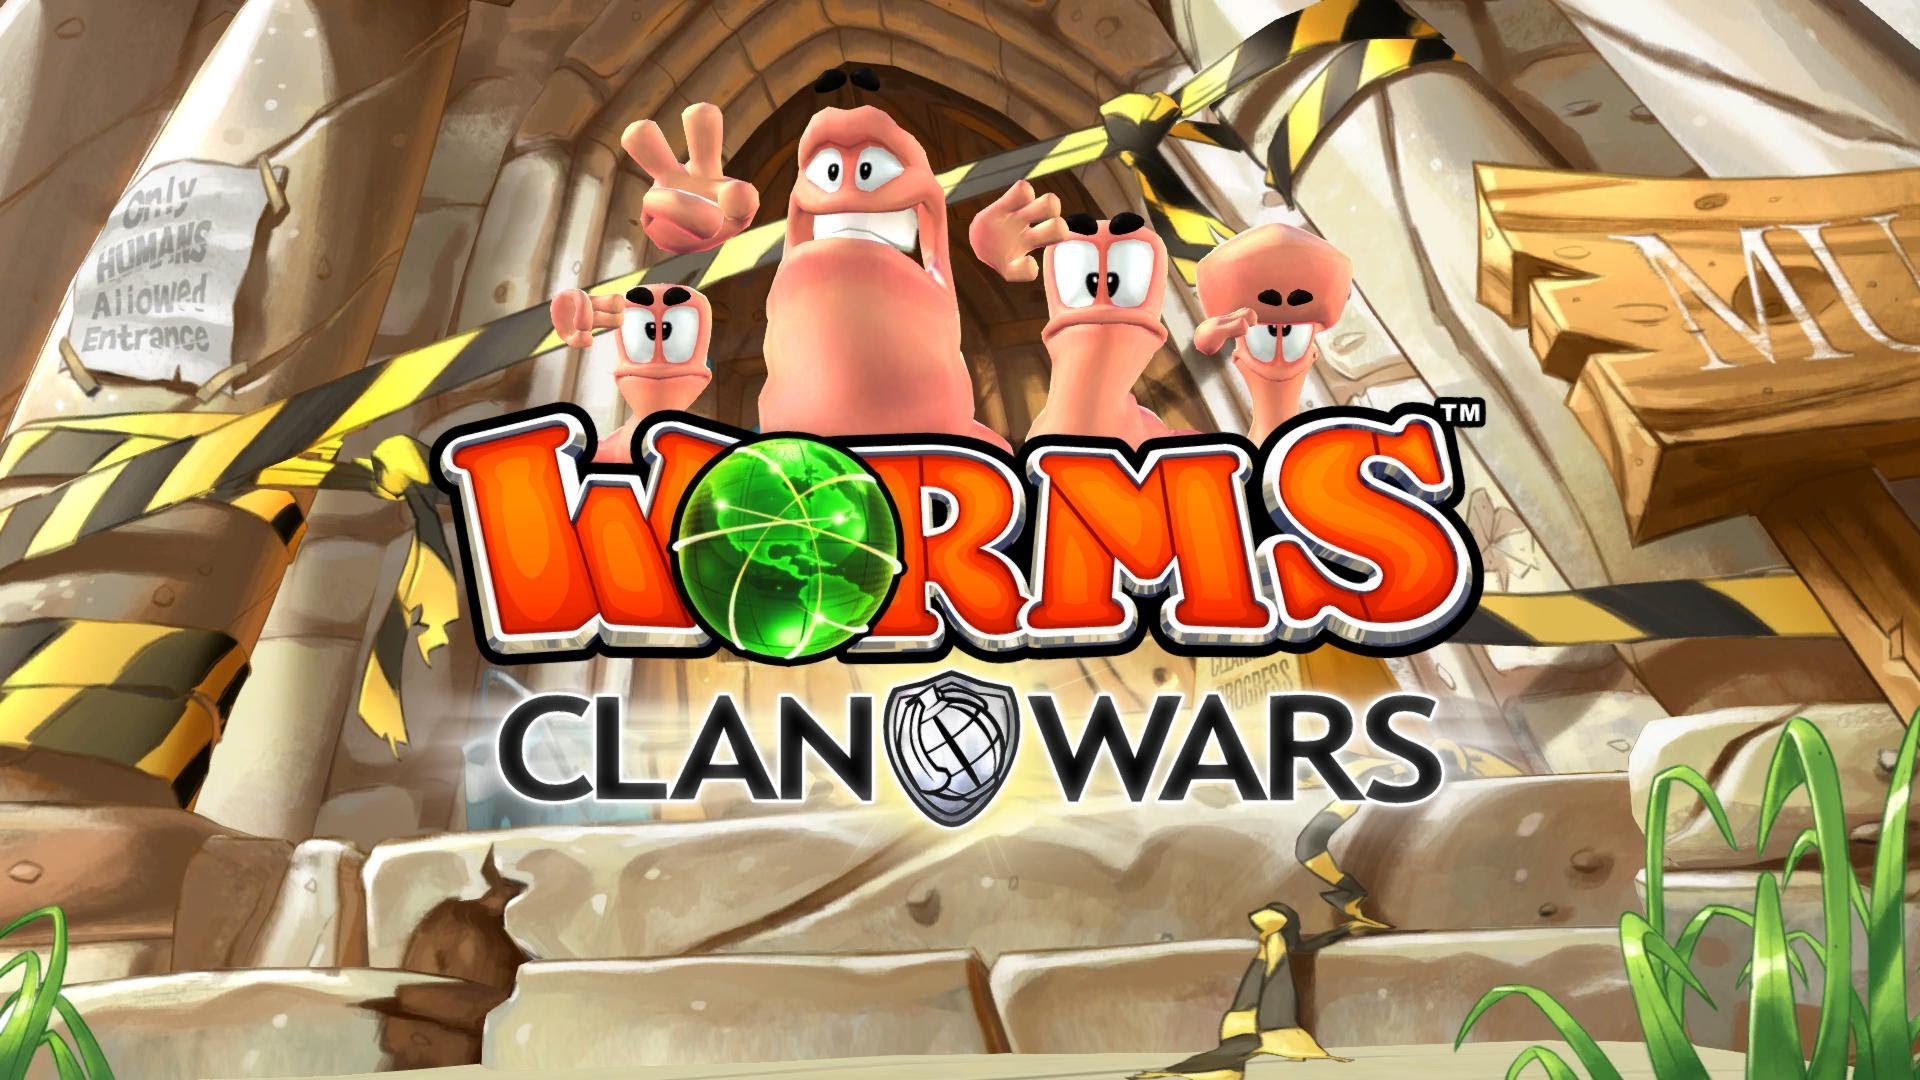 Steam worms clan